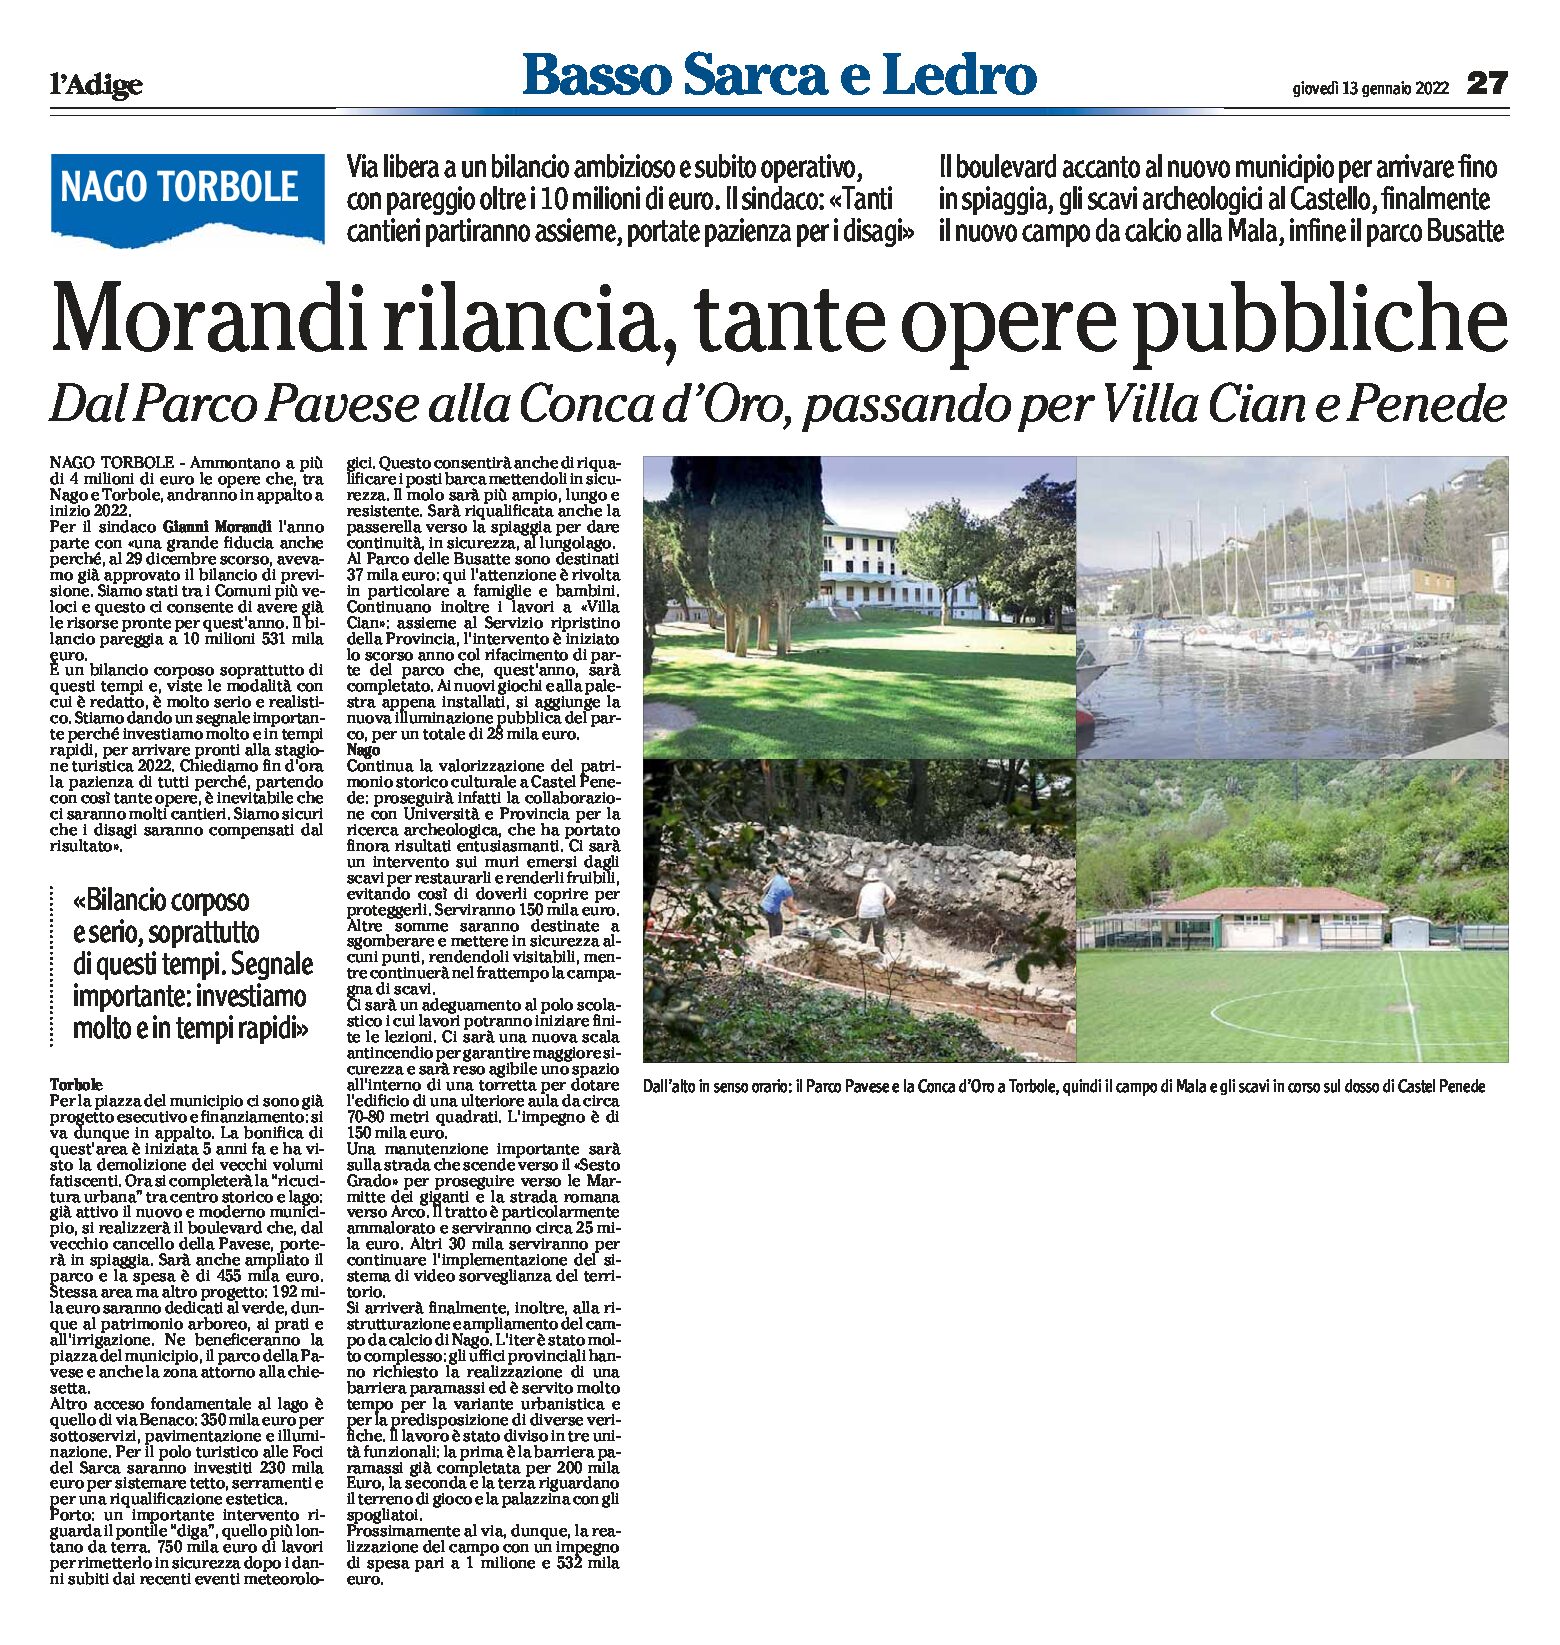 Nago Torbole: il sindaco Morandi rilancia, tante opere pubbliche